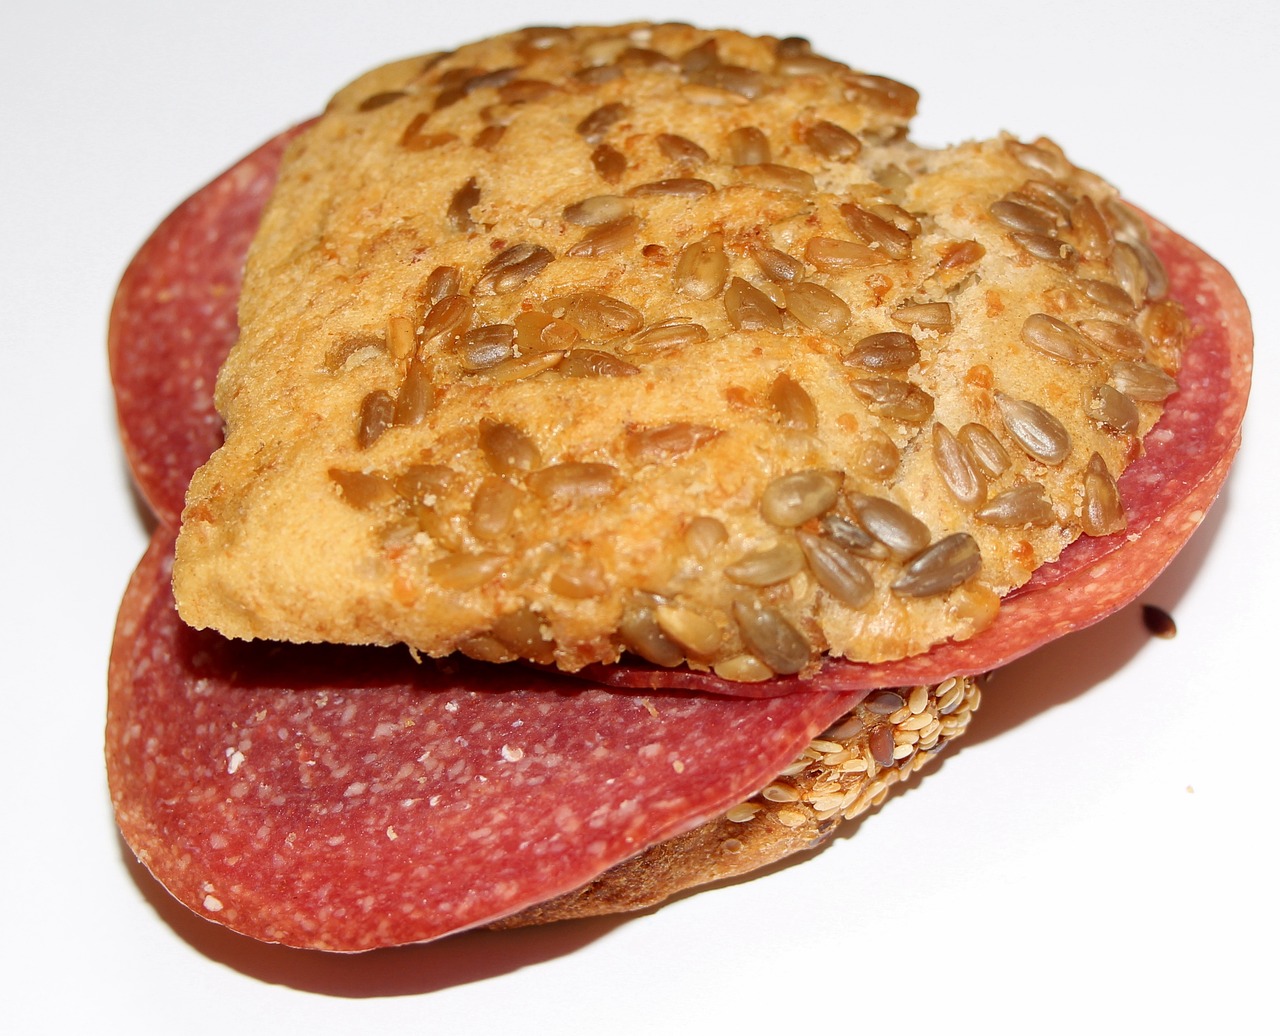 Salami Bread or Stromboli